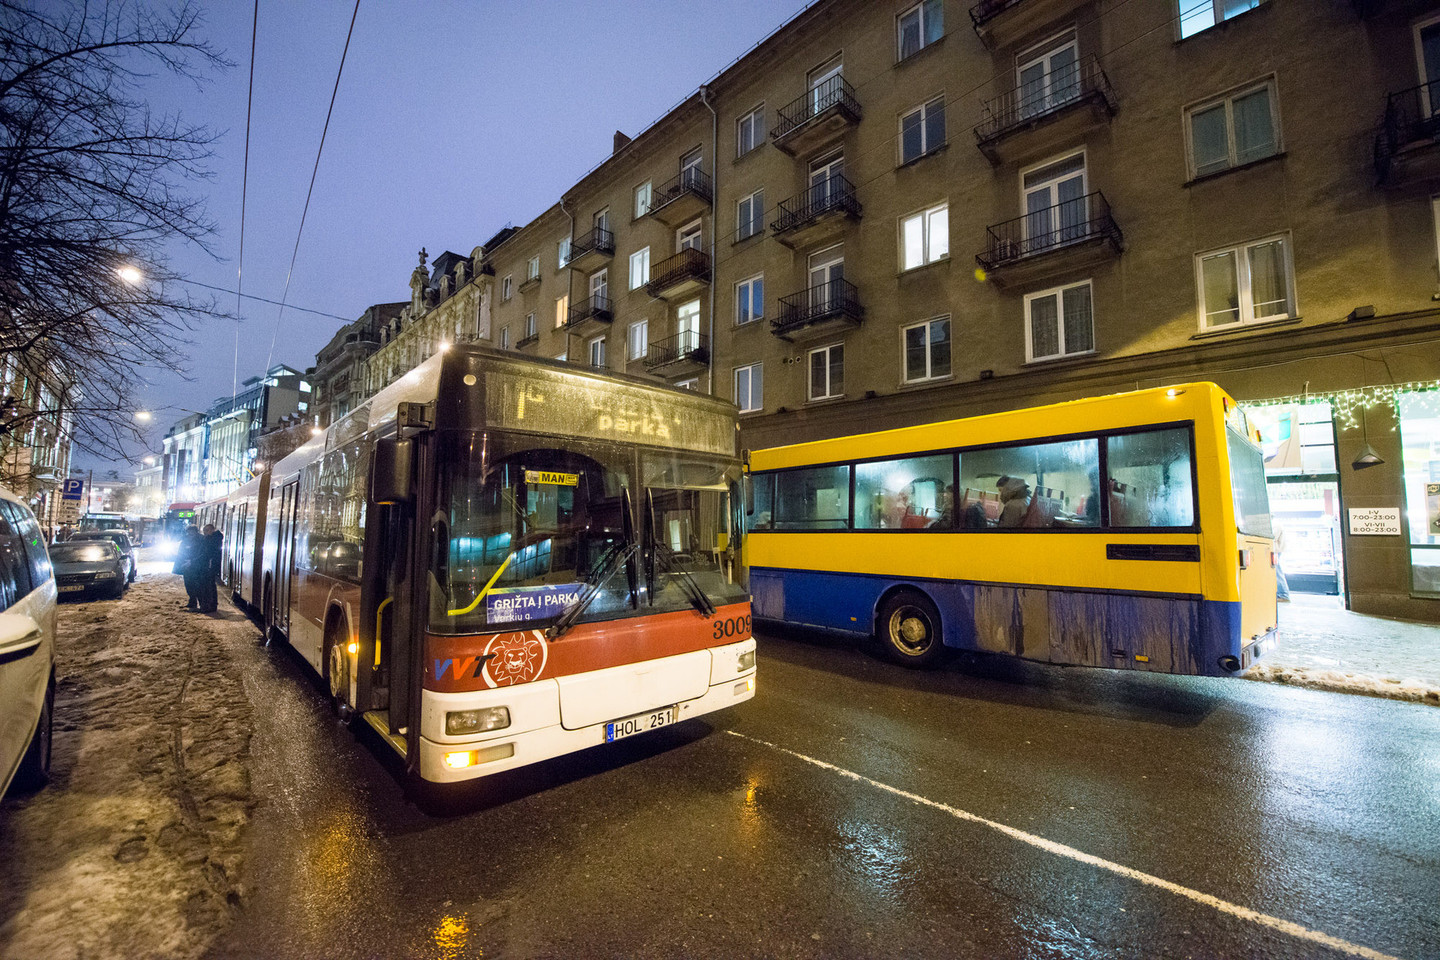 Per metus Vilniaus miesto autobusai nuvažiuoja vidutiniškai apie 27 mln. kilometrų.<br>J.Stacevičiaus nuotr.